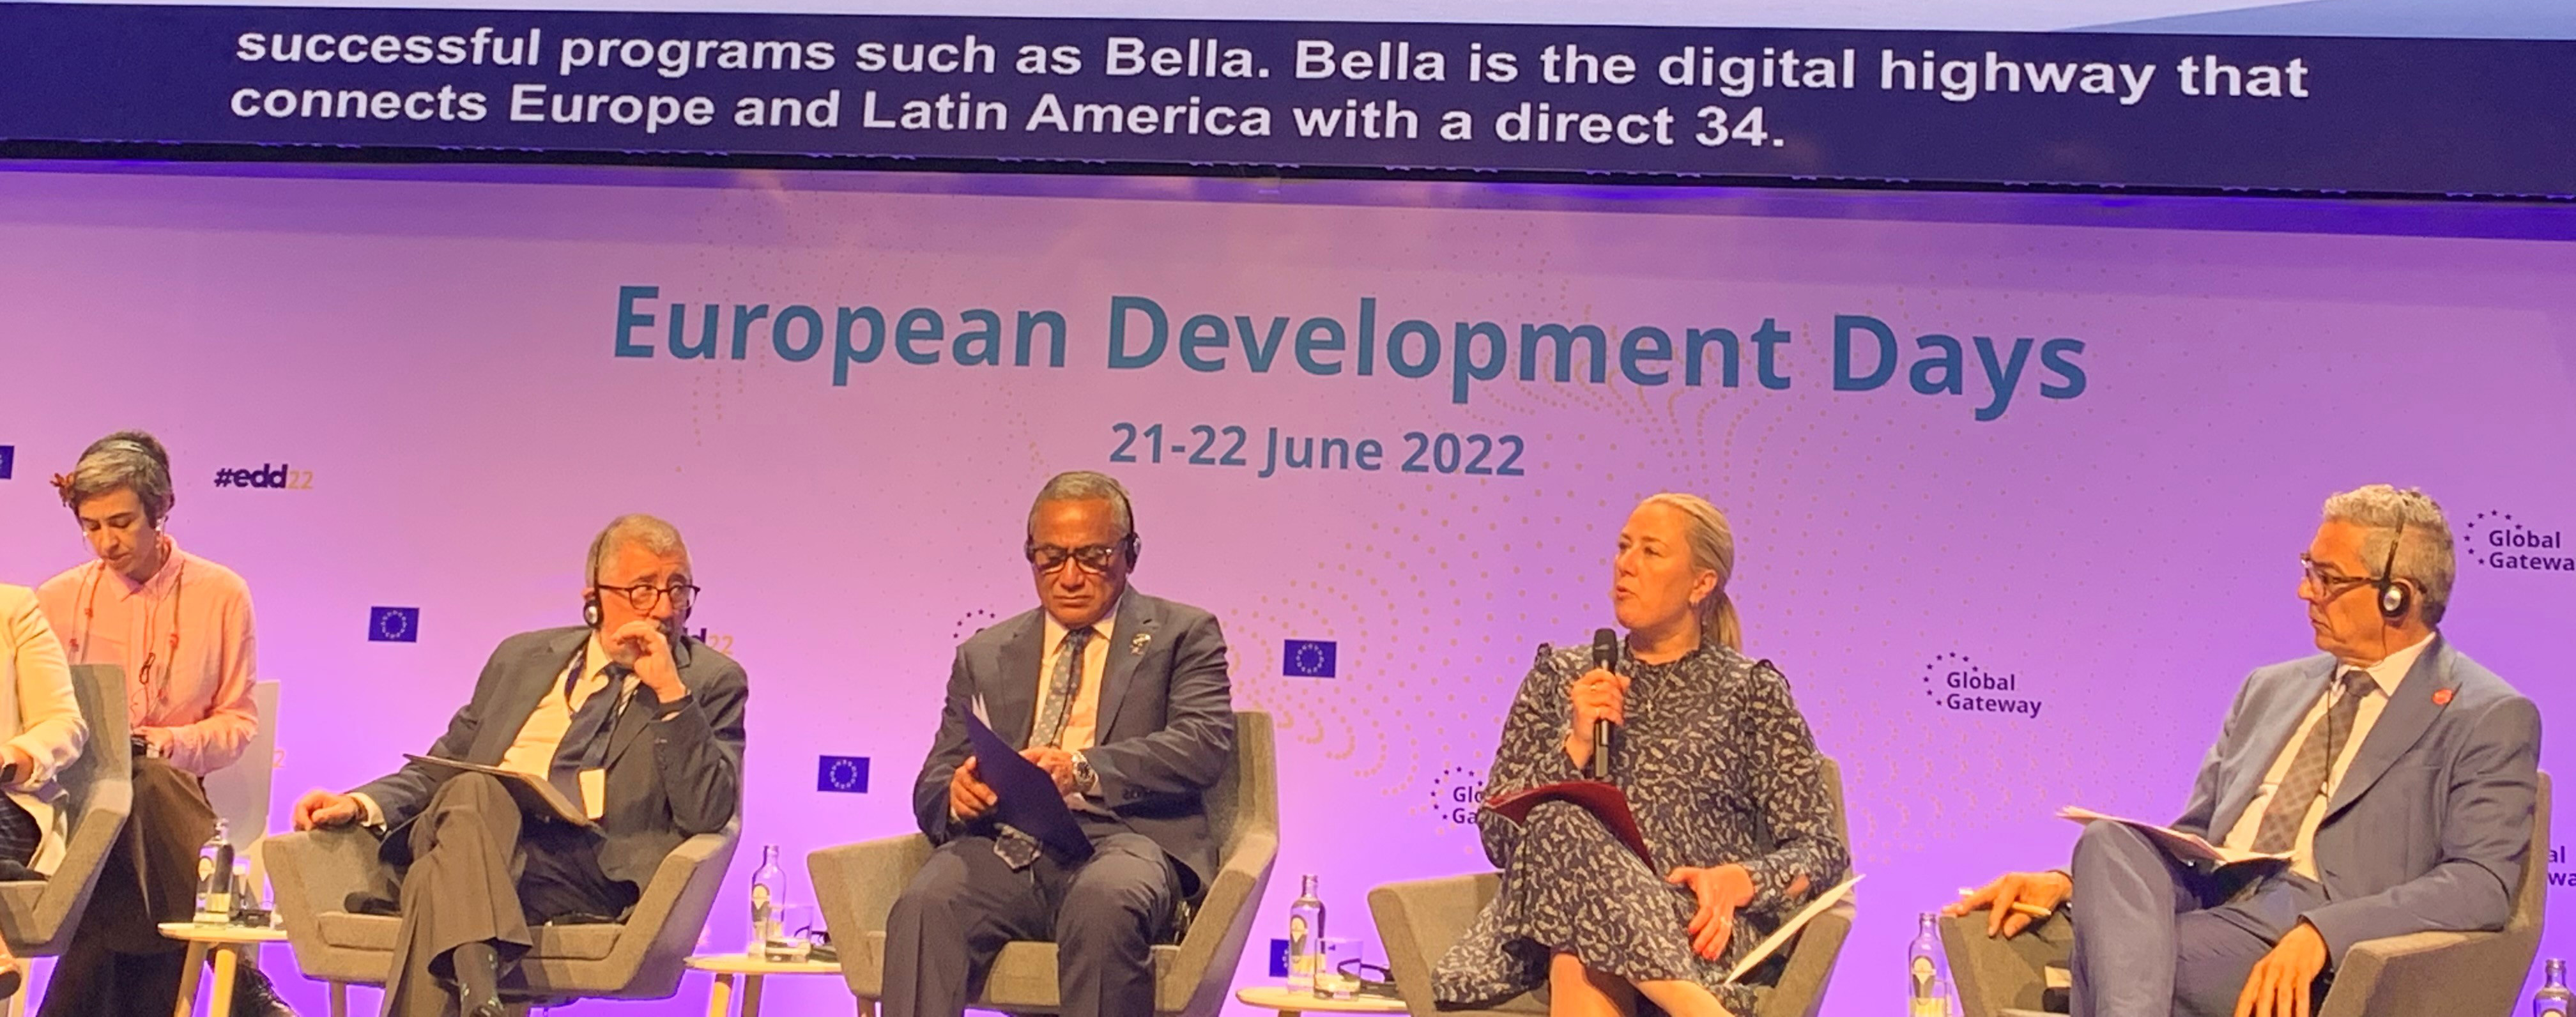 Jutta Urpilainen, Comisaria de la UE para Asociaciones Internacionales: “BELLA es la autopista digital que conecta Europa y América Latina”